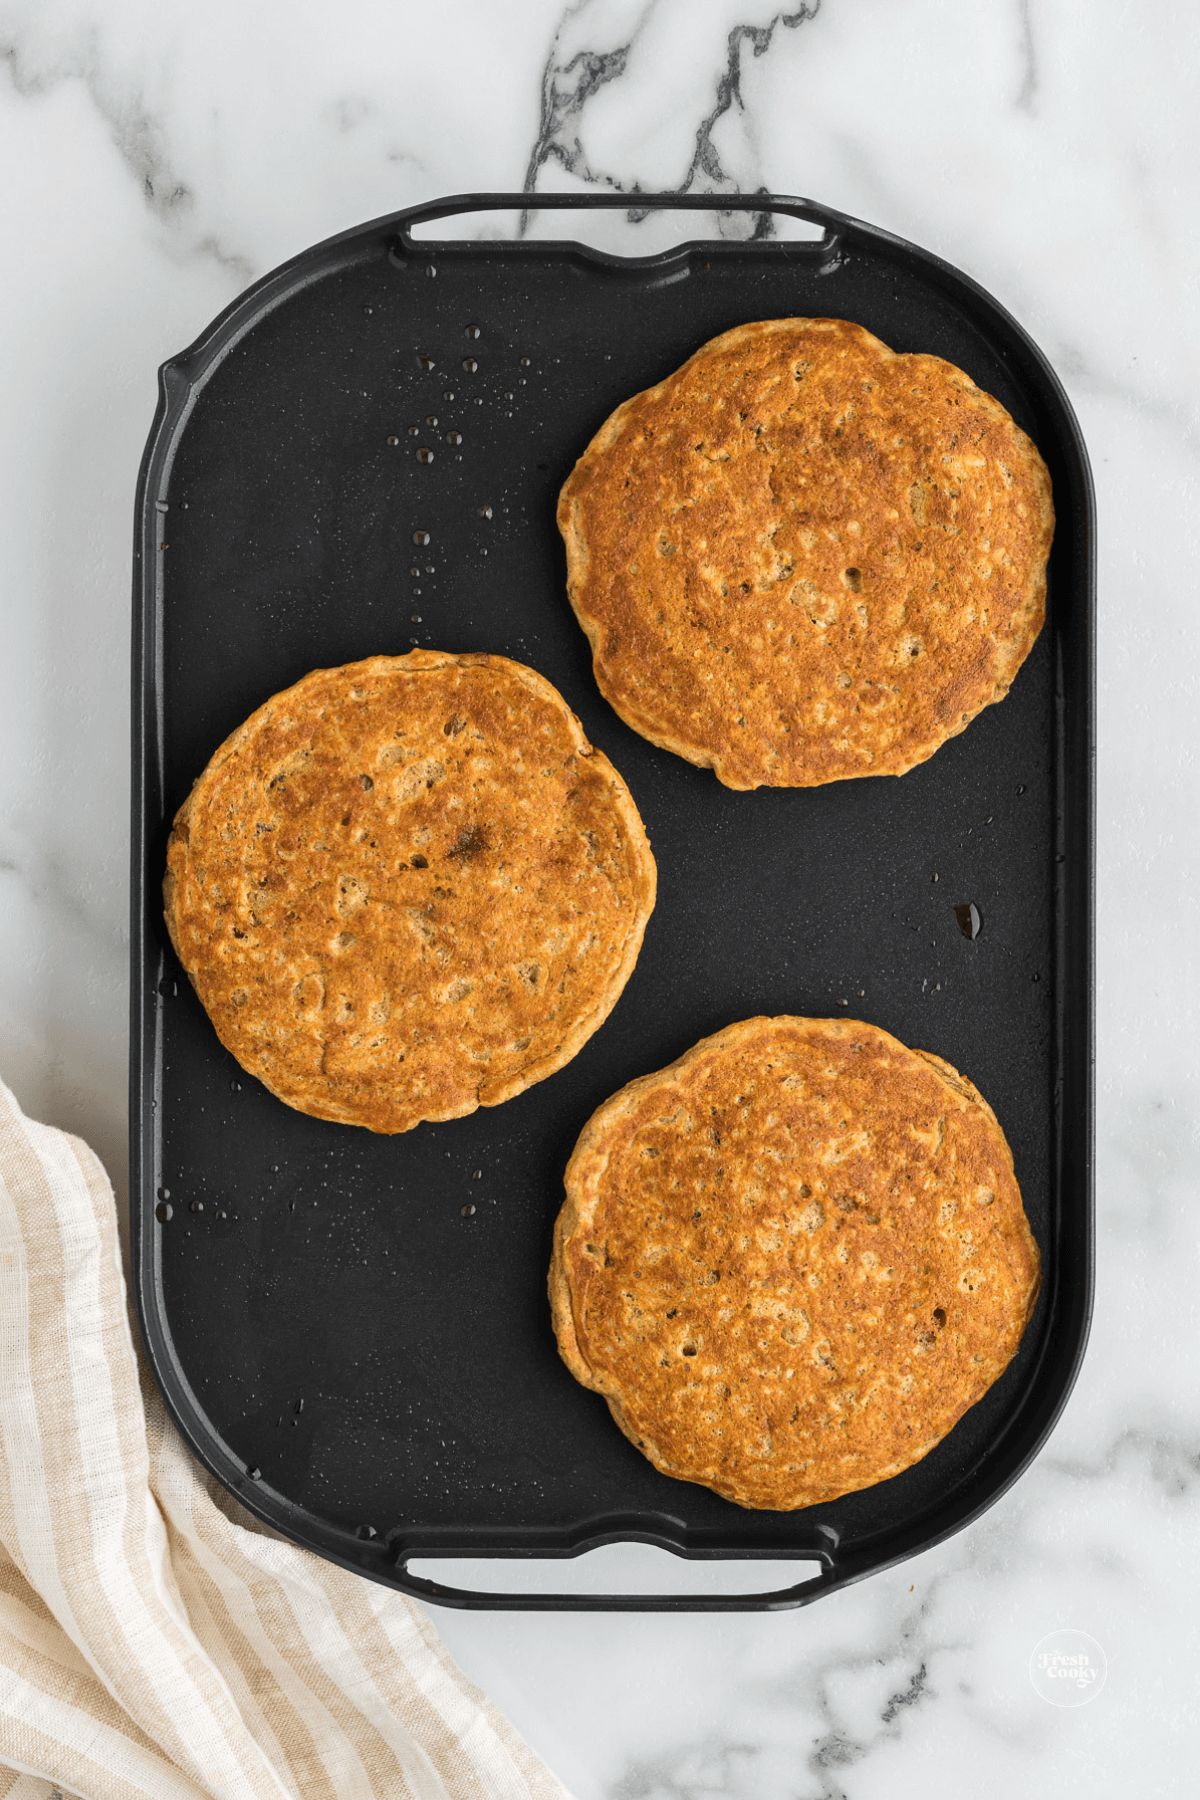 IHOP Harvest pancake recipe golden brown on griddle.